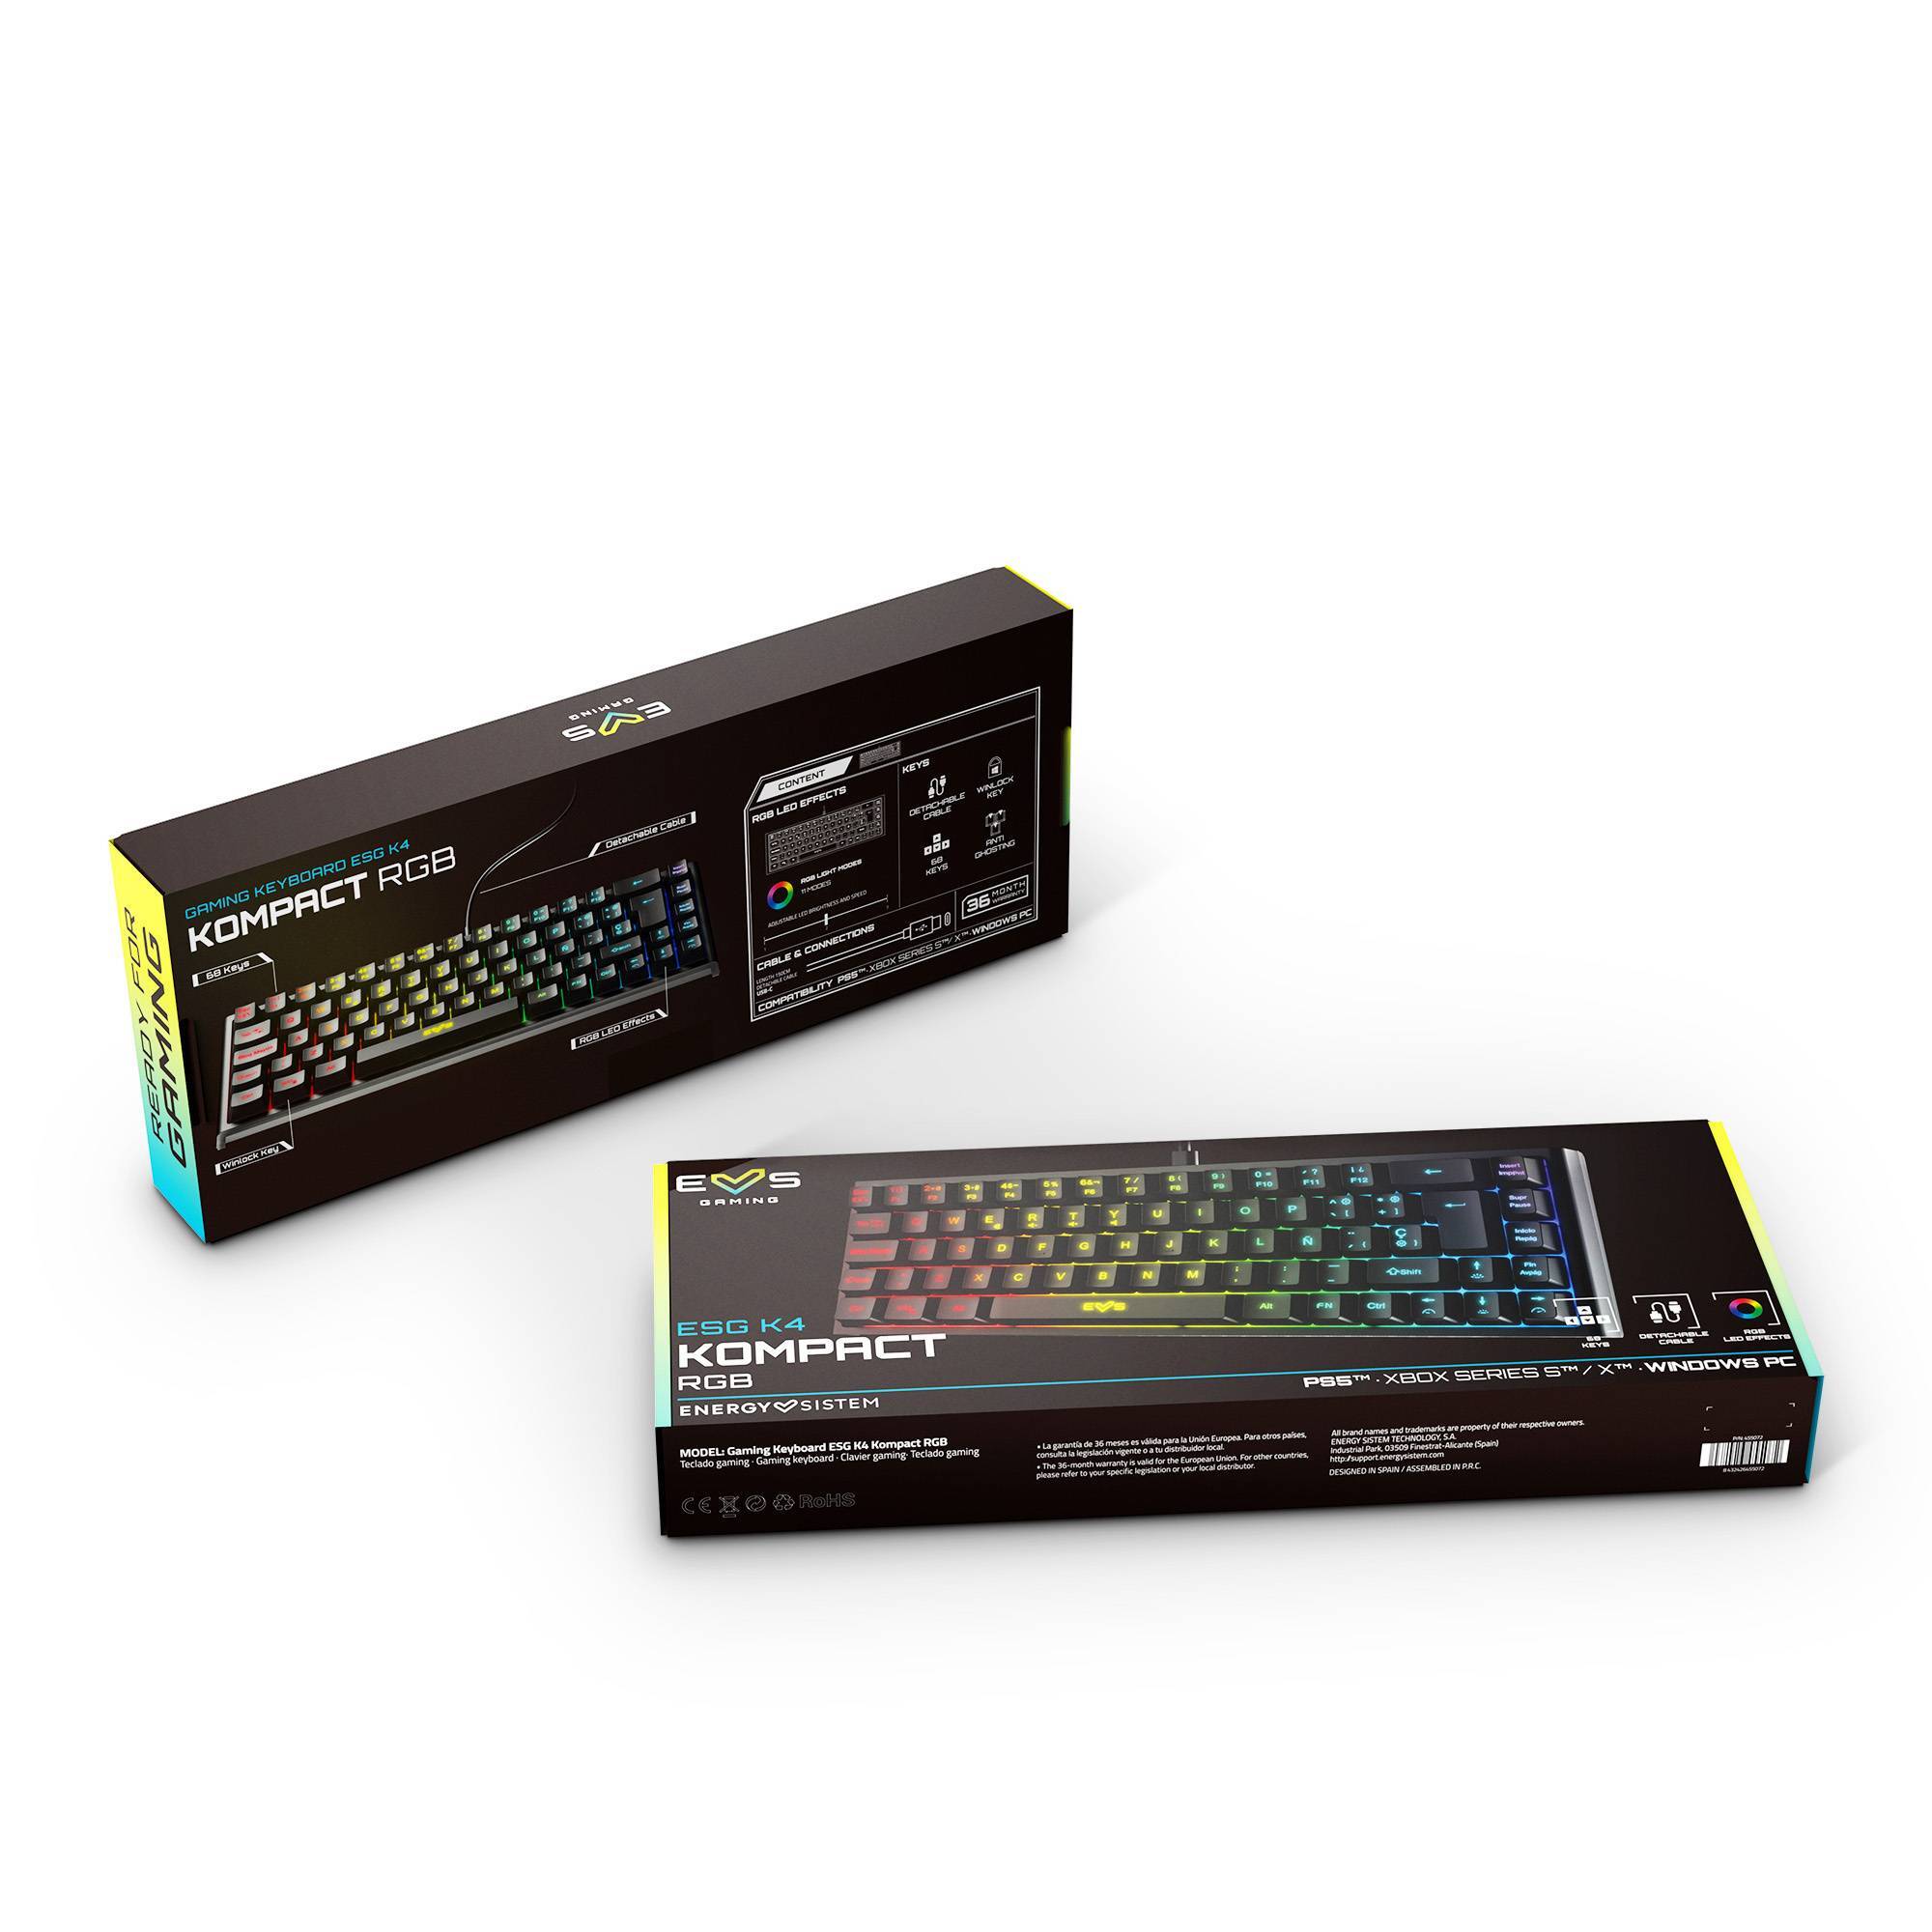 Packaging del Gaming Keyboard ESG K4 KOMPACT-RGB BLACK